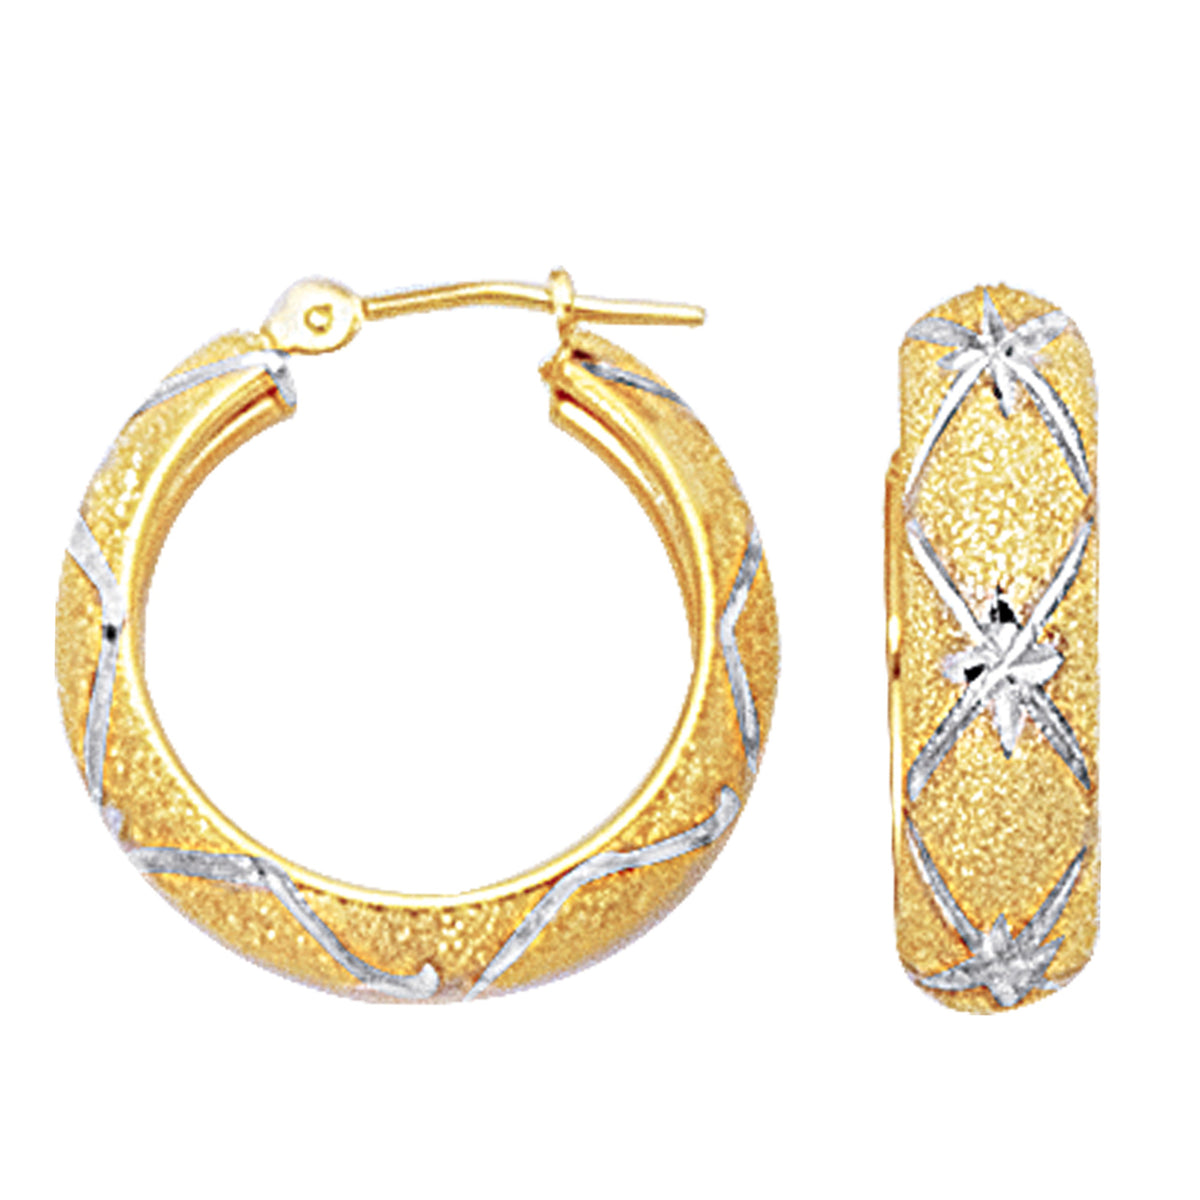 Pendientes de aro redondos texturizados con corte de diamante en oro blanco y amarillo de 10 quilates en 2 tonos, joyería fina de diseño de 22 mm de diámetro para hombres y mujeres